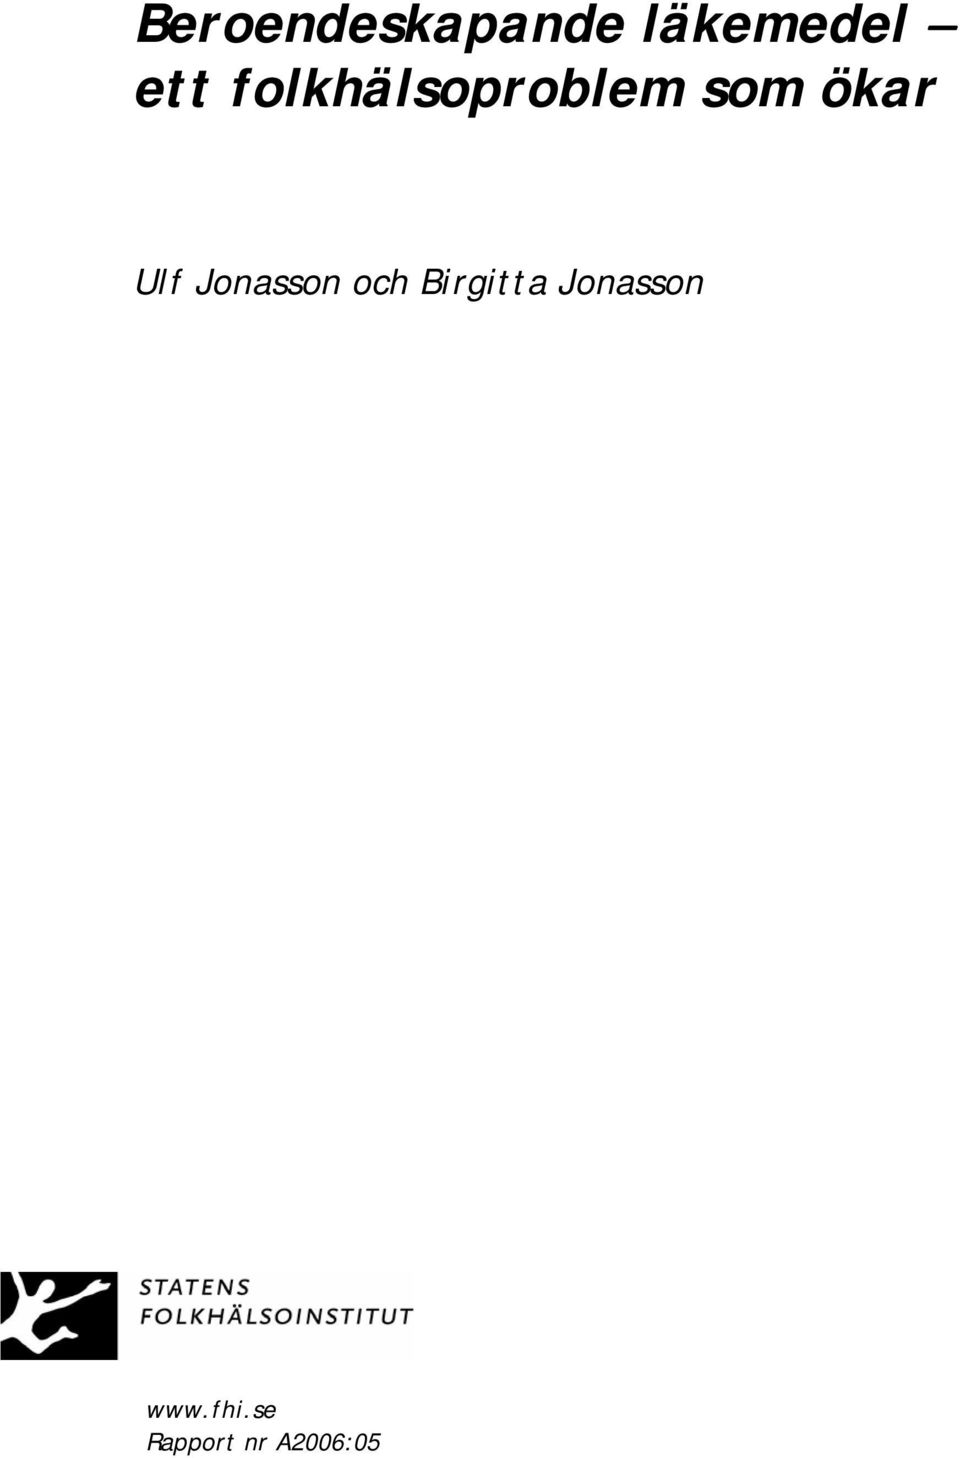 Jonasson och Birgitta Jonasson